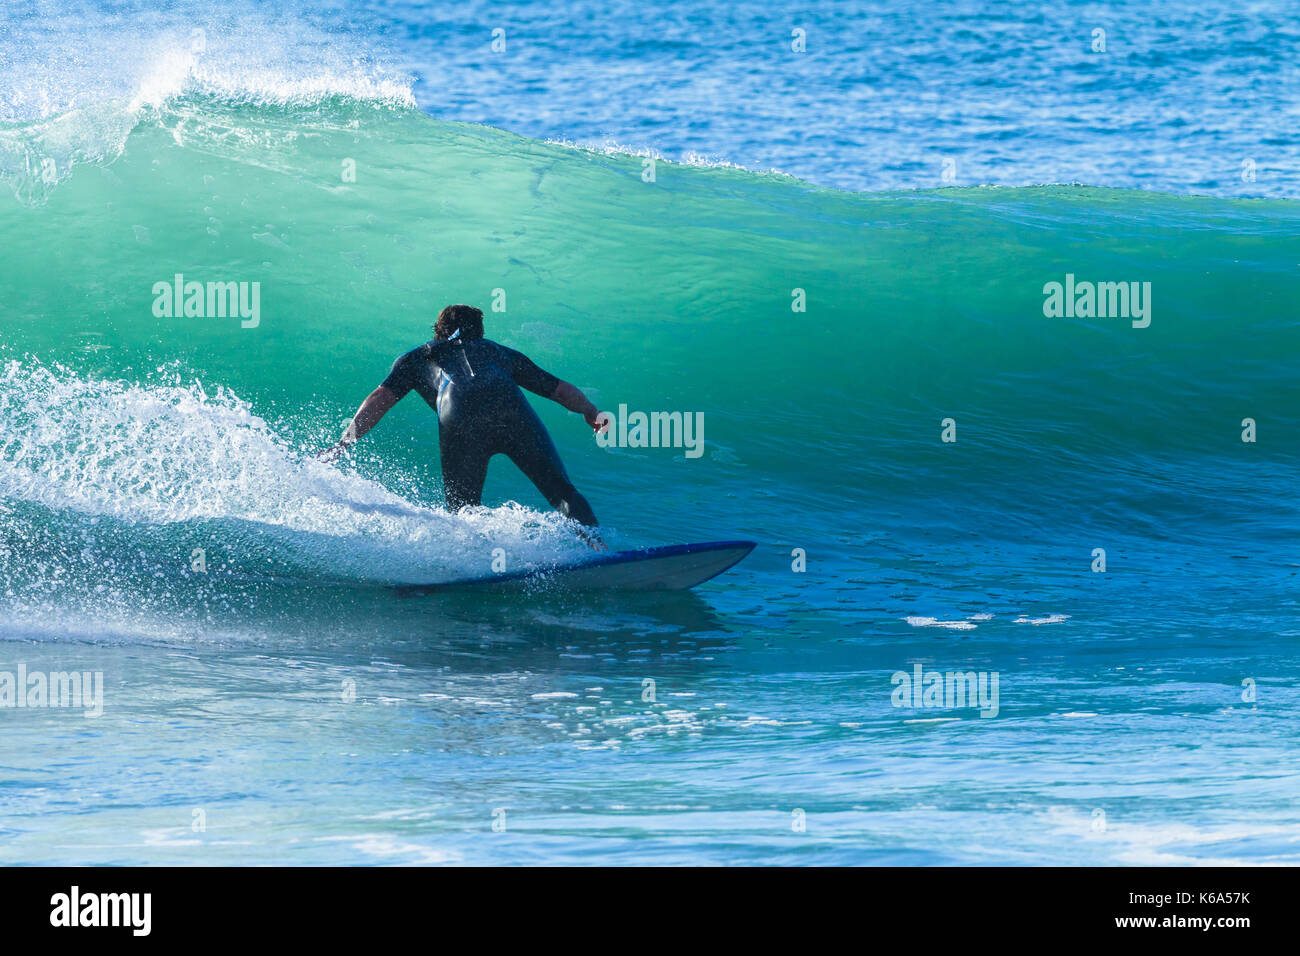 Unbekannter Surfer surfen Rides Ocean Wave Aktion Foto Stockfoto